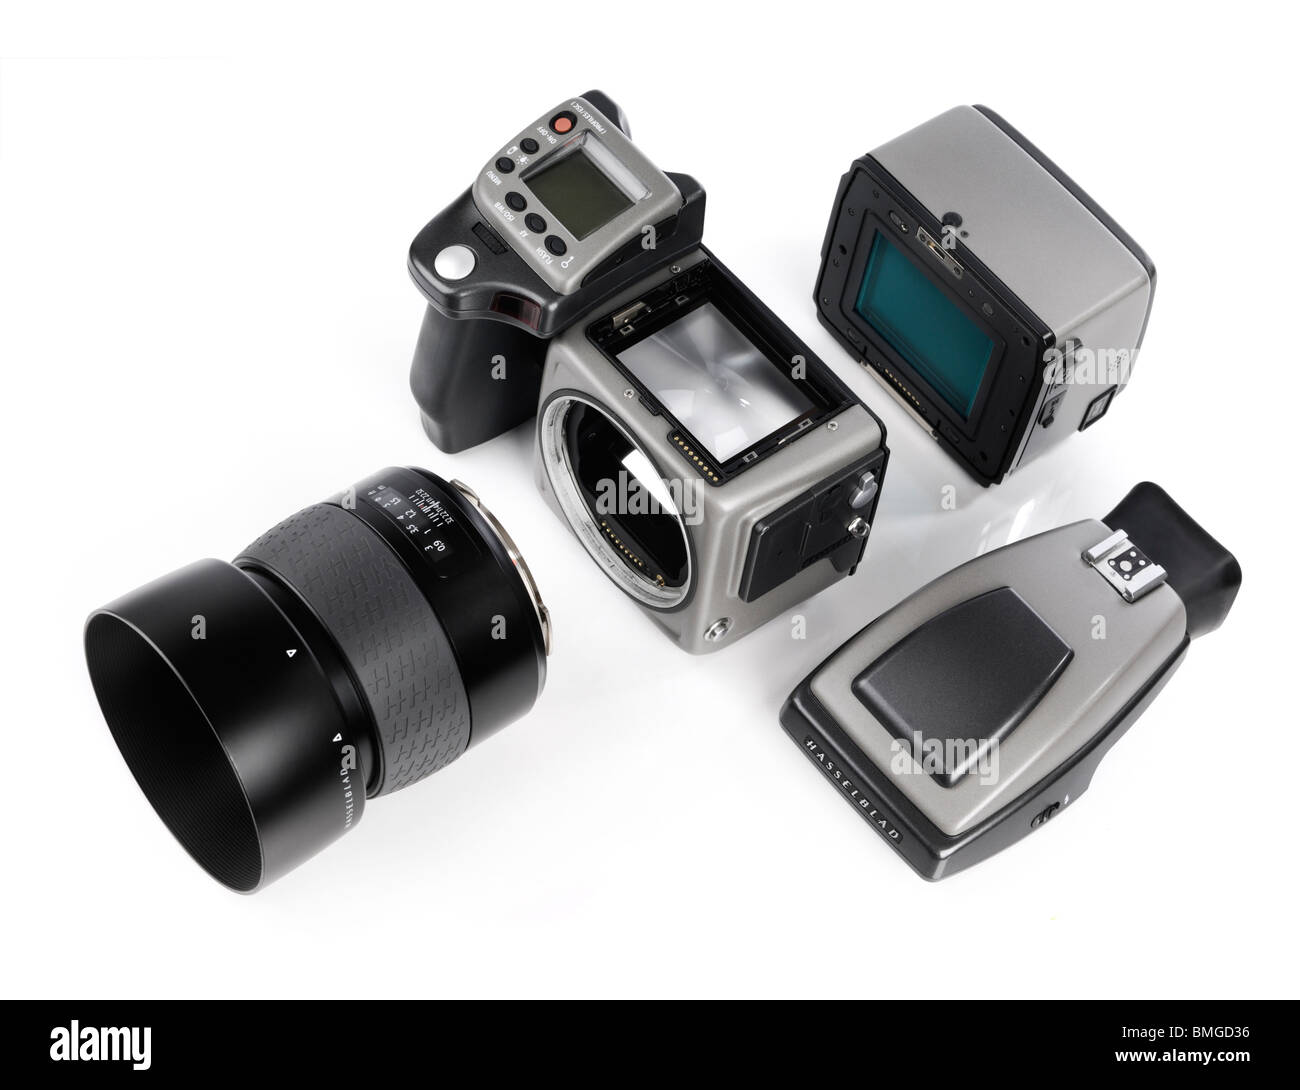 Hasselblad H3DII-39 con cámara digital de formato medio digital back, la lente y el visor separado del cuerpo de la cámara Foto de stock